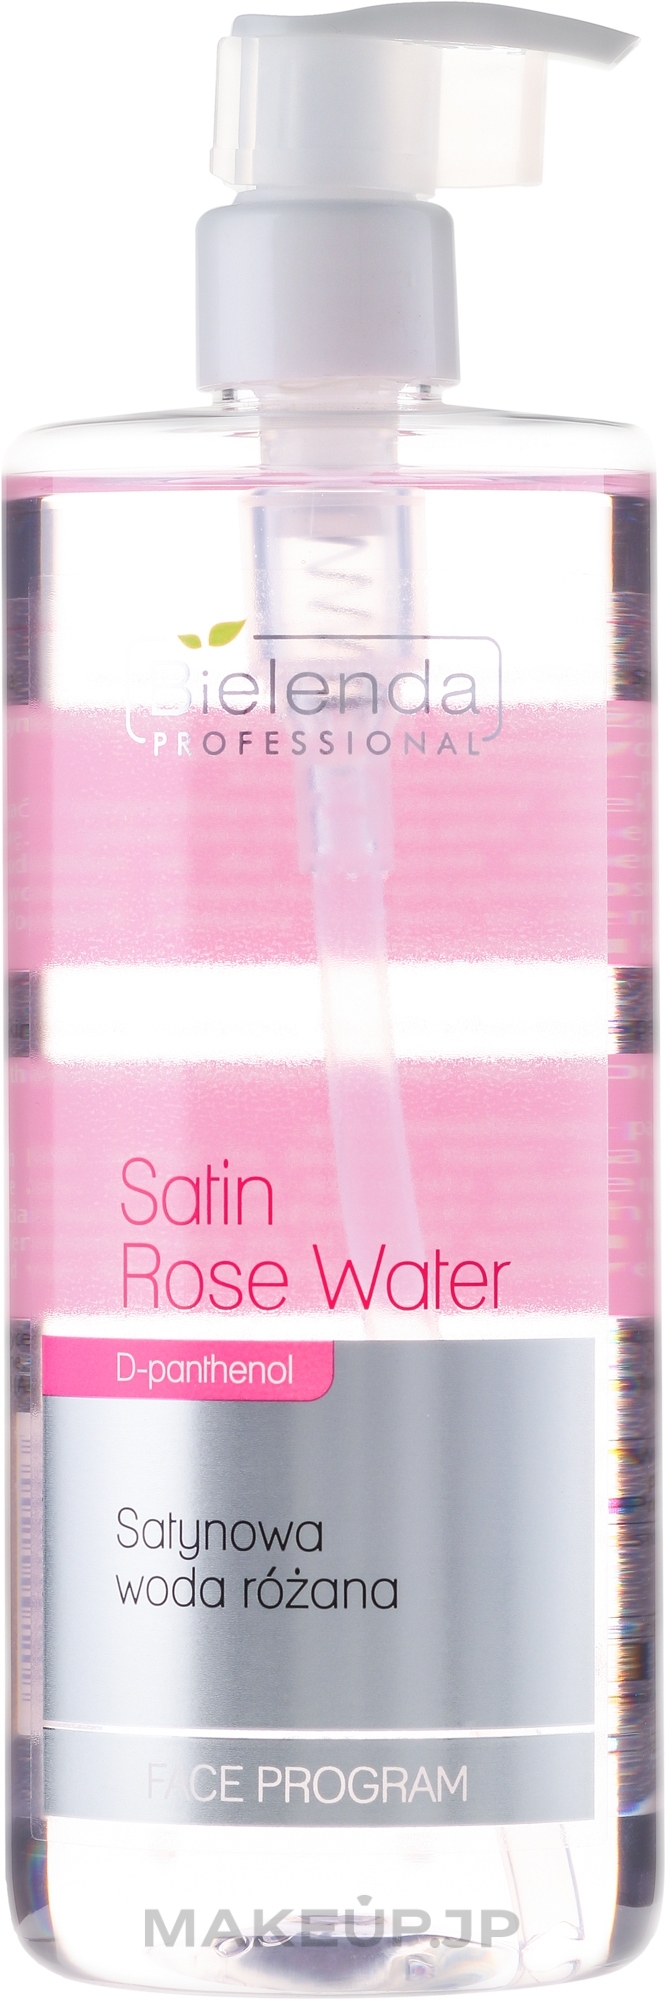 Satin Rose Water - Bielenda Professional Face Program Satin Rose Water — photo 500 ml